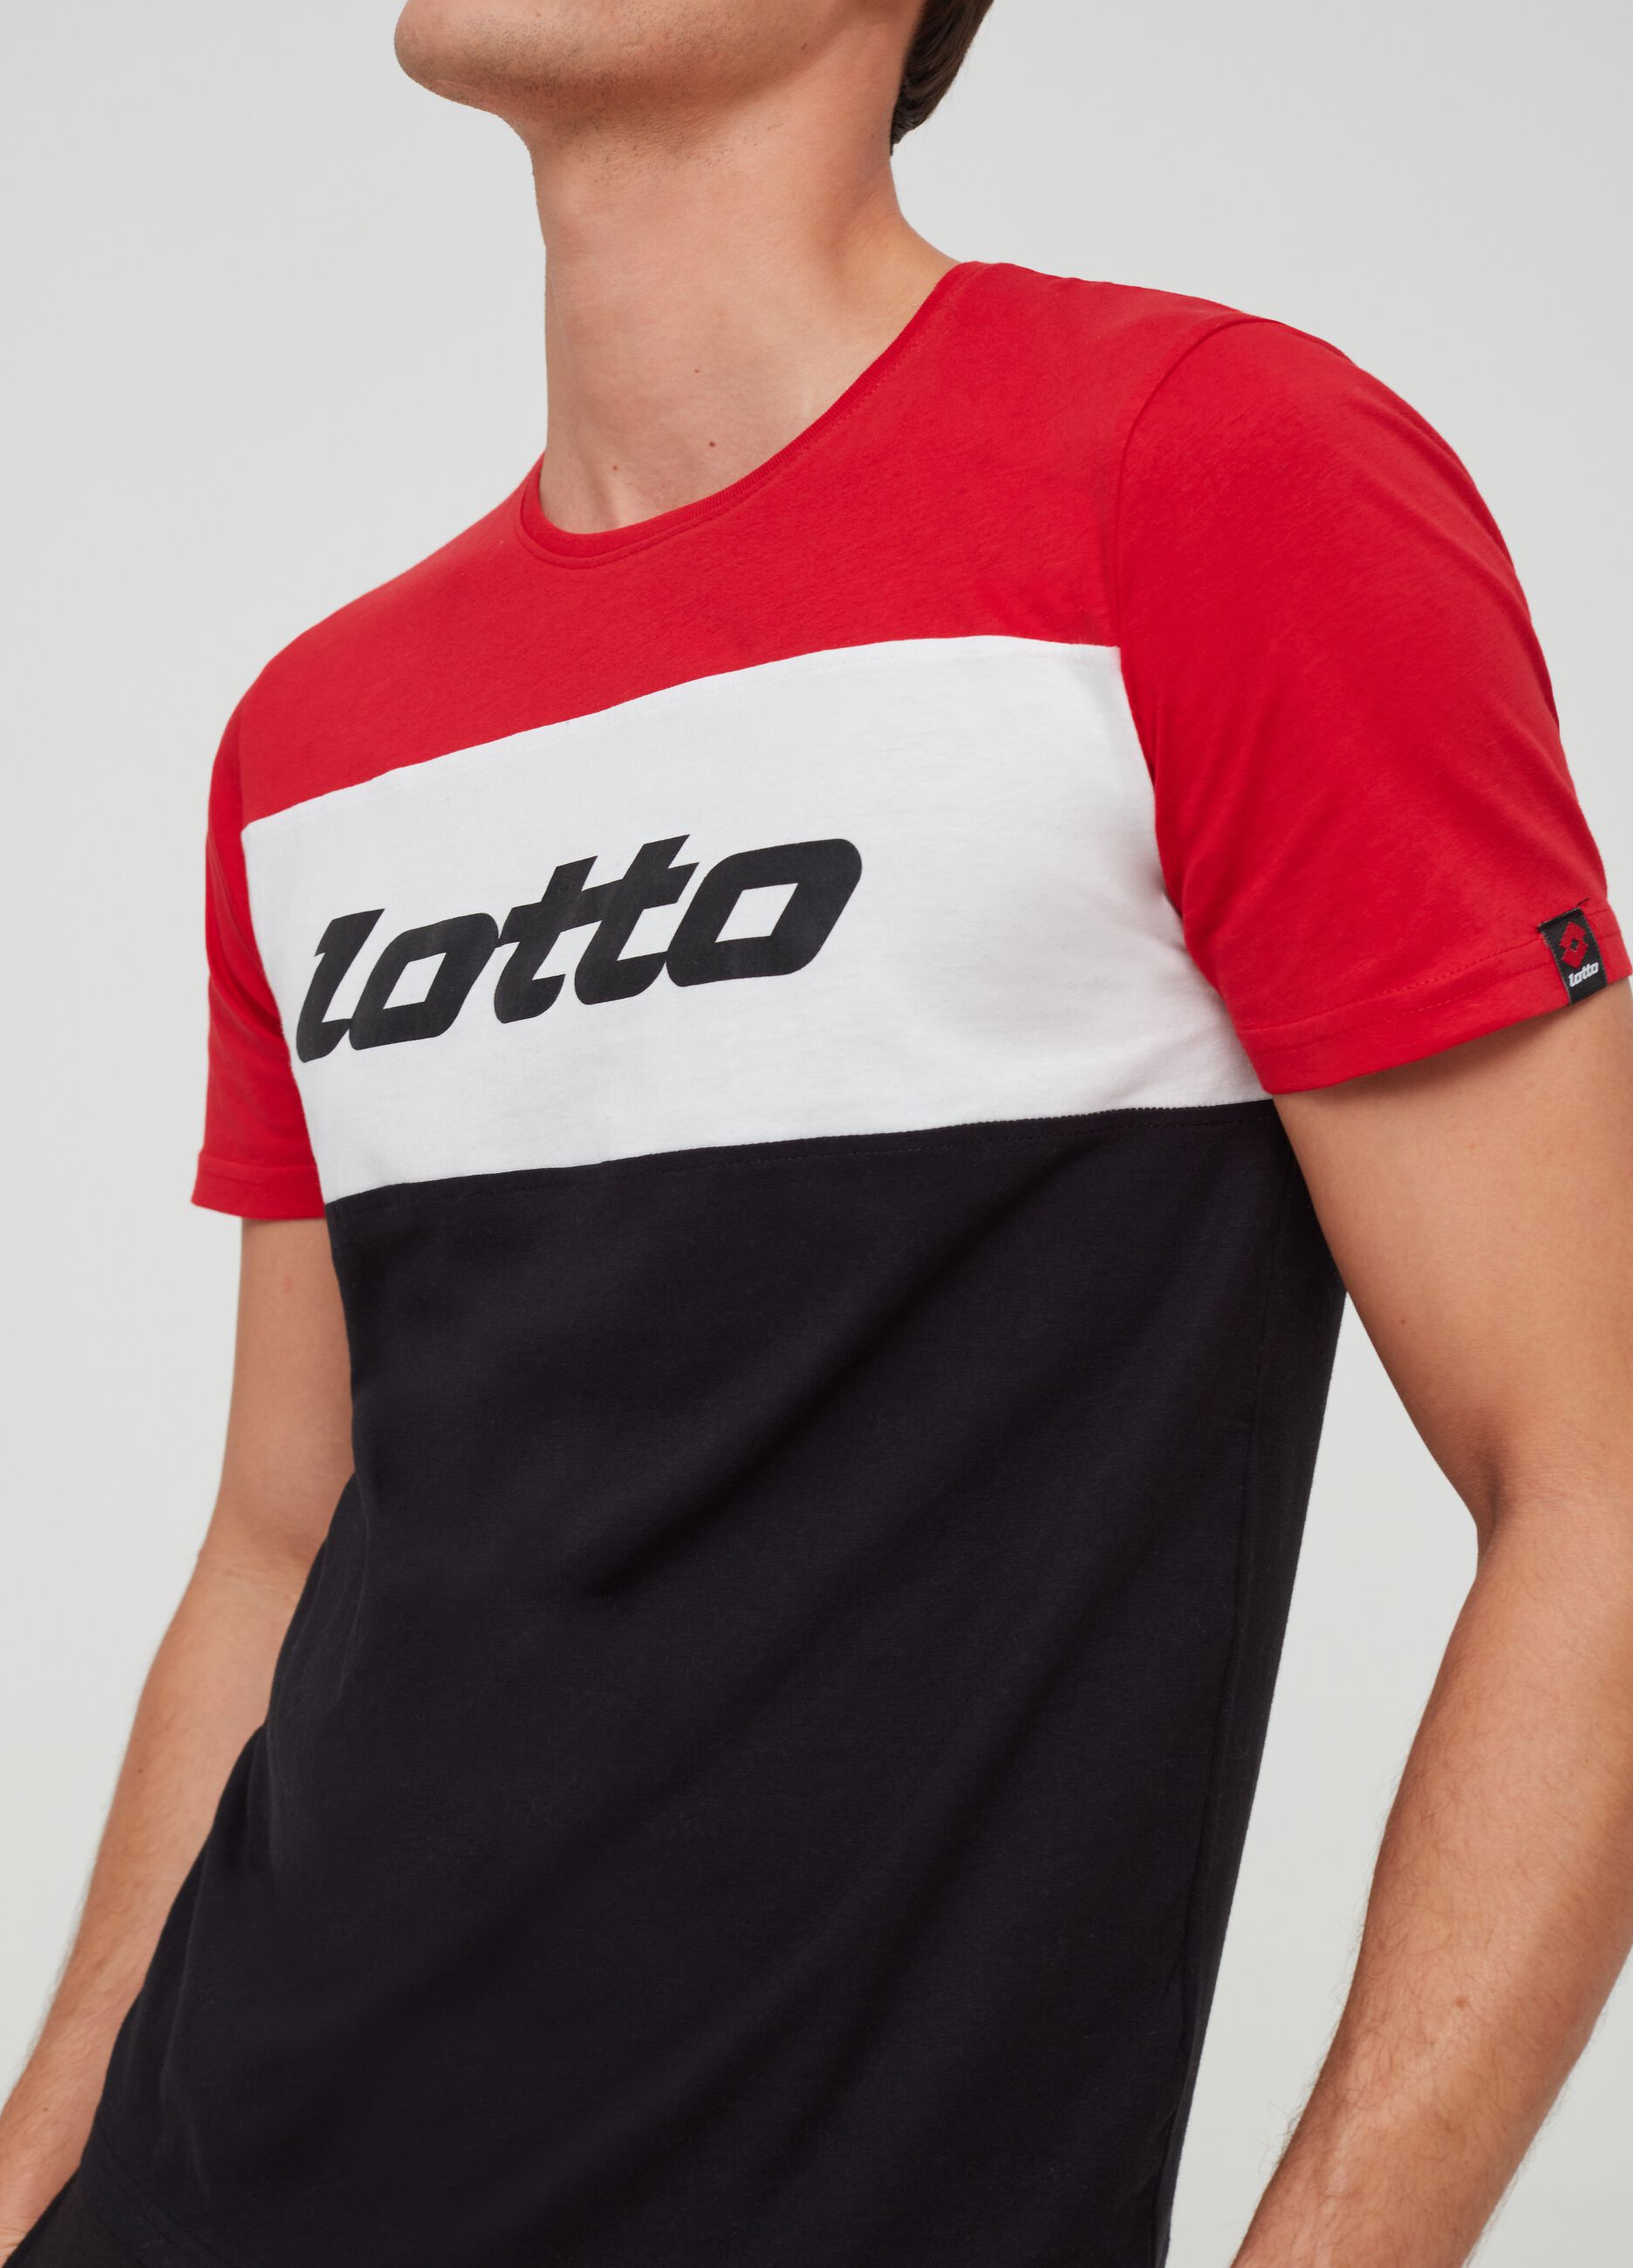 Camiseta algodón 100% estampado Lotto